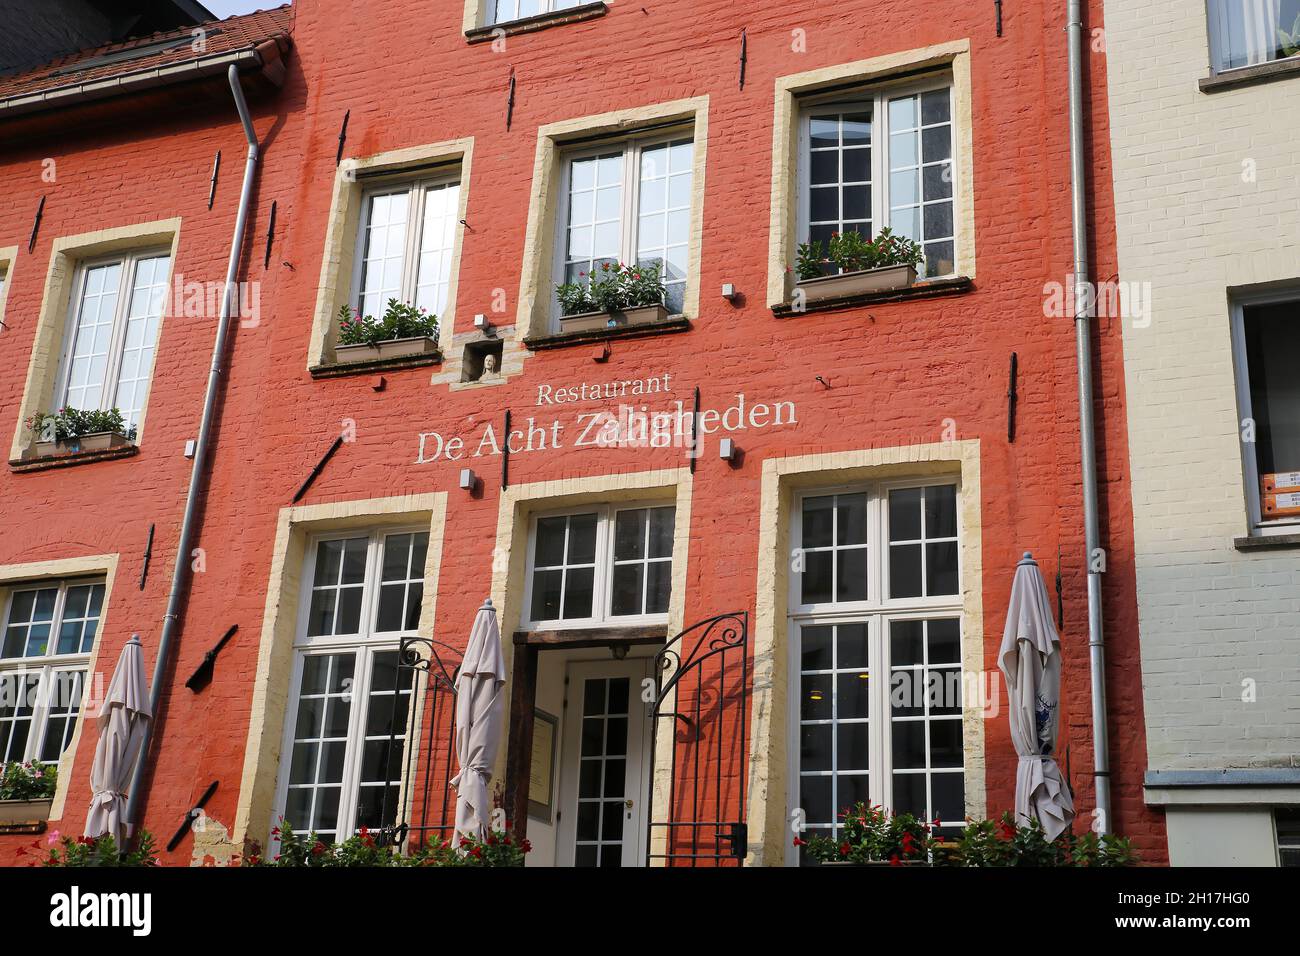 Gand, Belgio - 9 ottobre. 2021: Vista dal fiume sulla facciata casa in mattoni rossi del ristorante de acht zaligheden Foto Stock